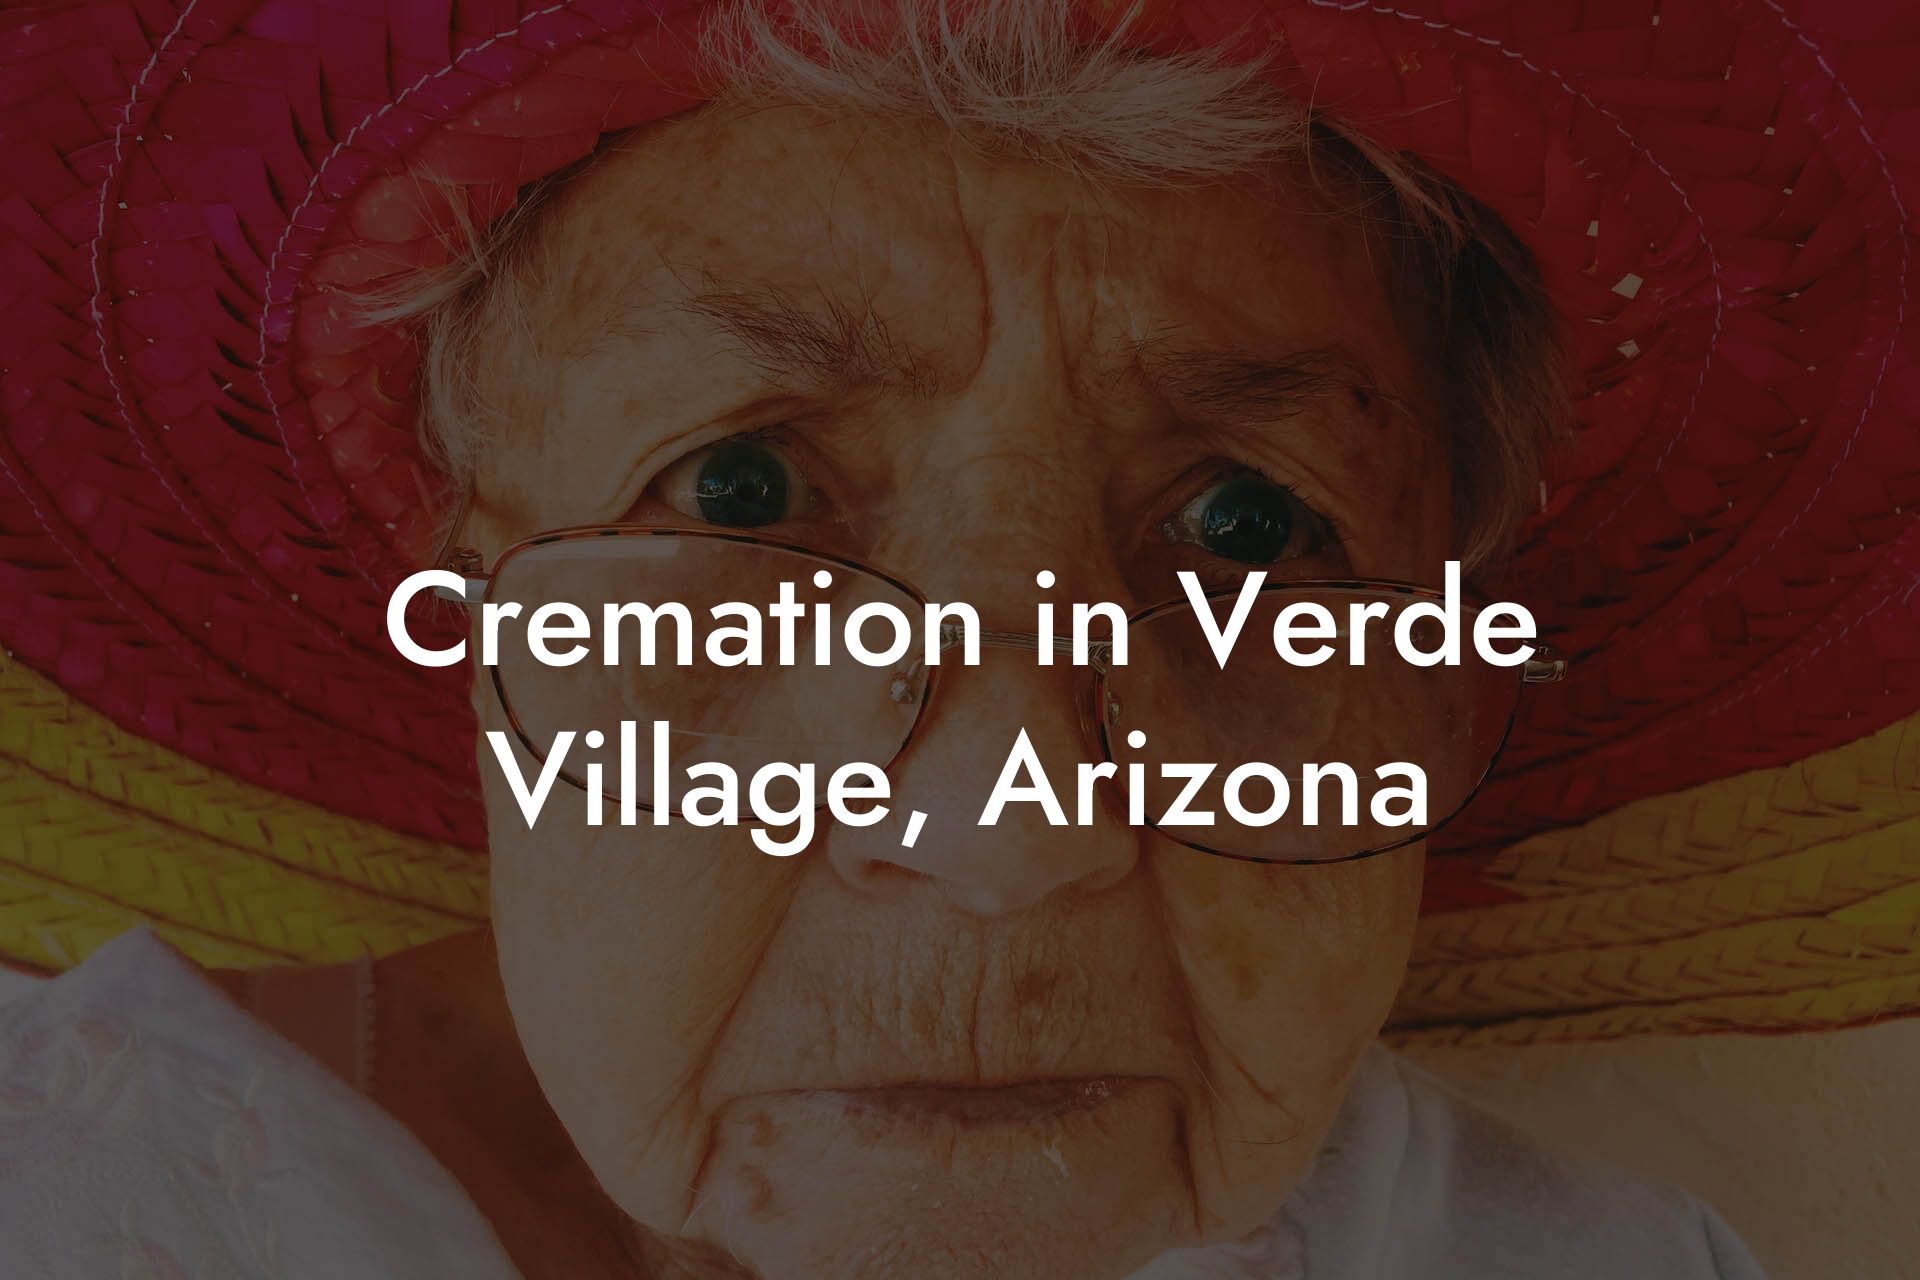 Cremation in Verde Village, Arizona